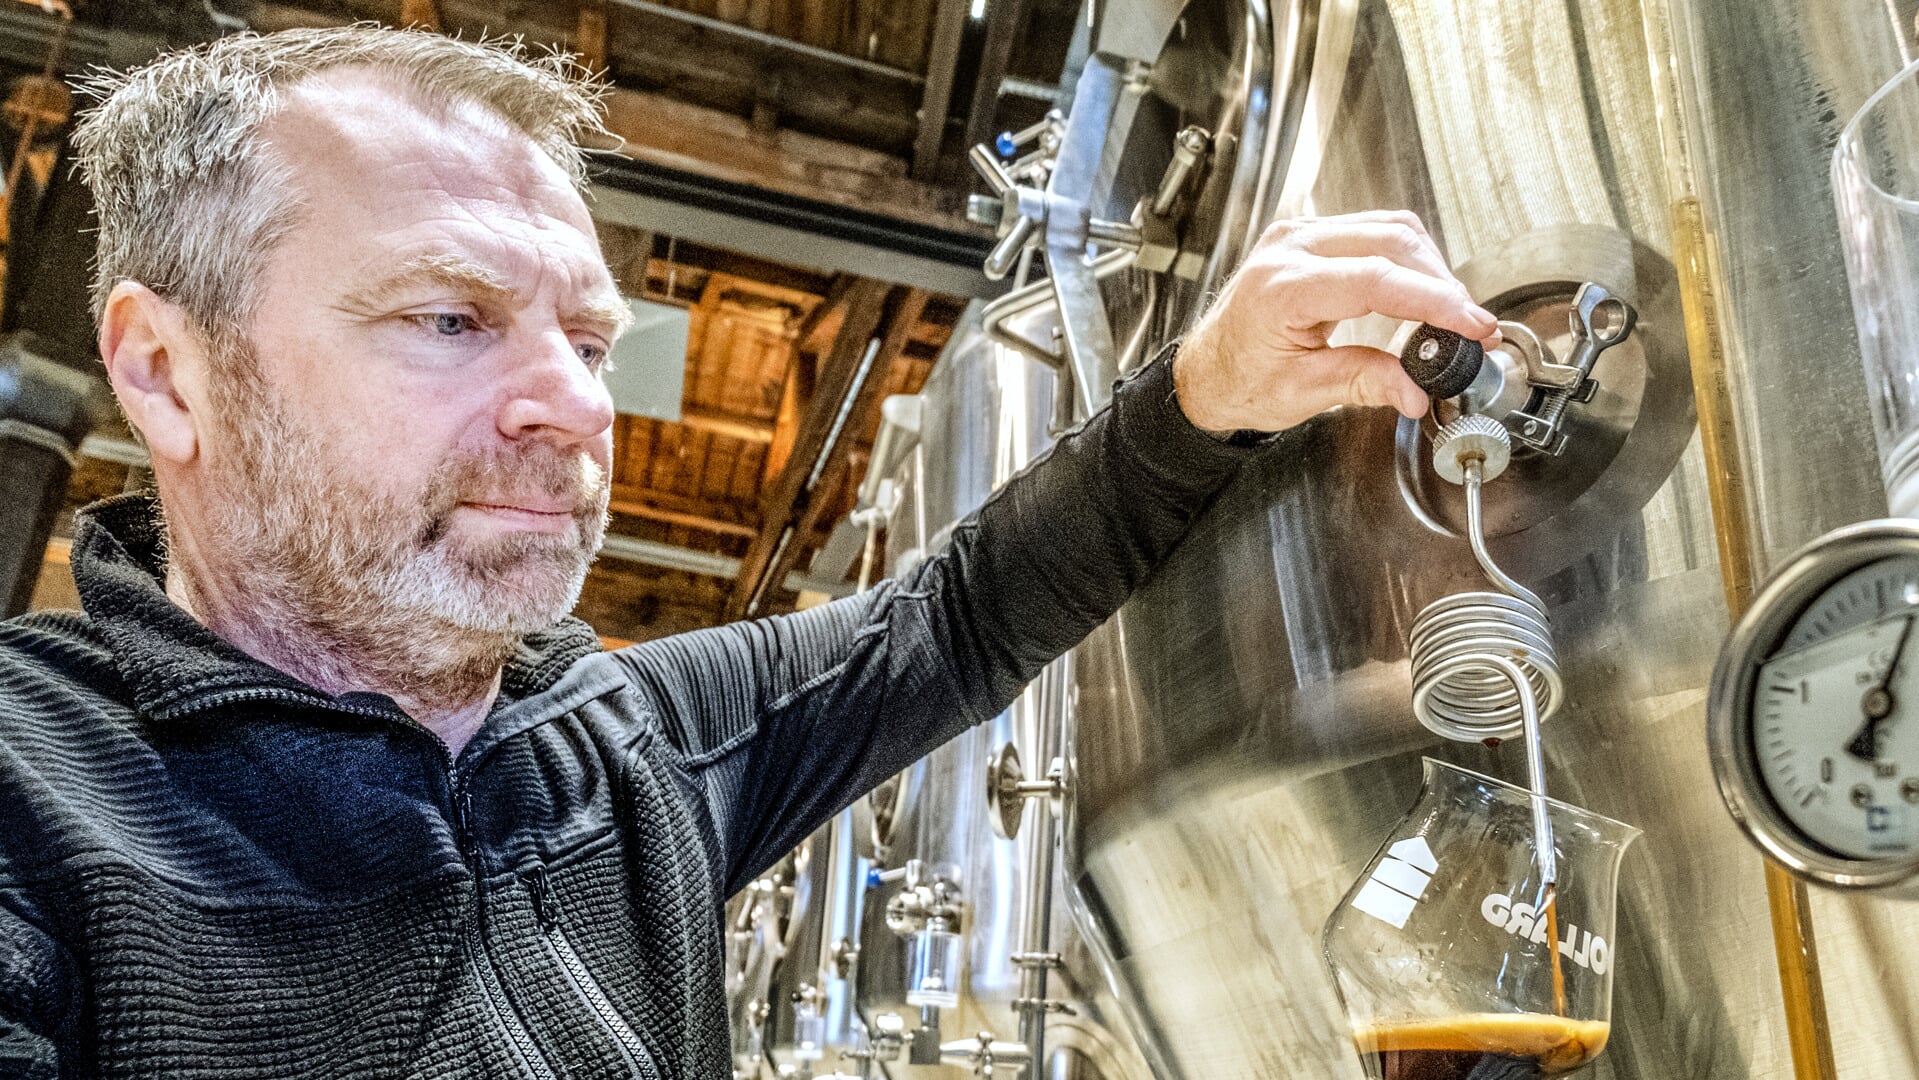 Bierbrouwer Hans Noorman, aangesloten bij Coöperatie De Graanrepubliek, test of zijn donkere bier op smaak is.